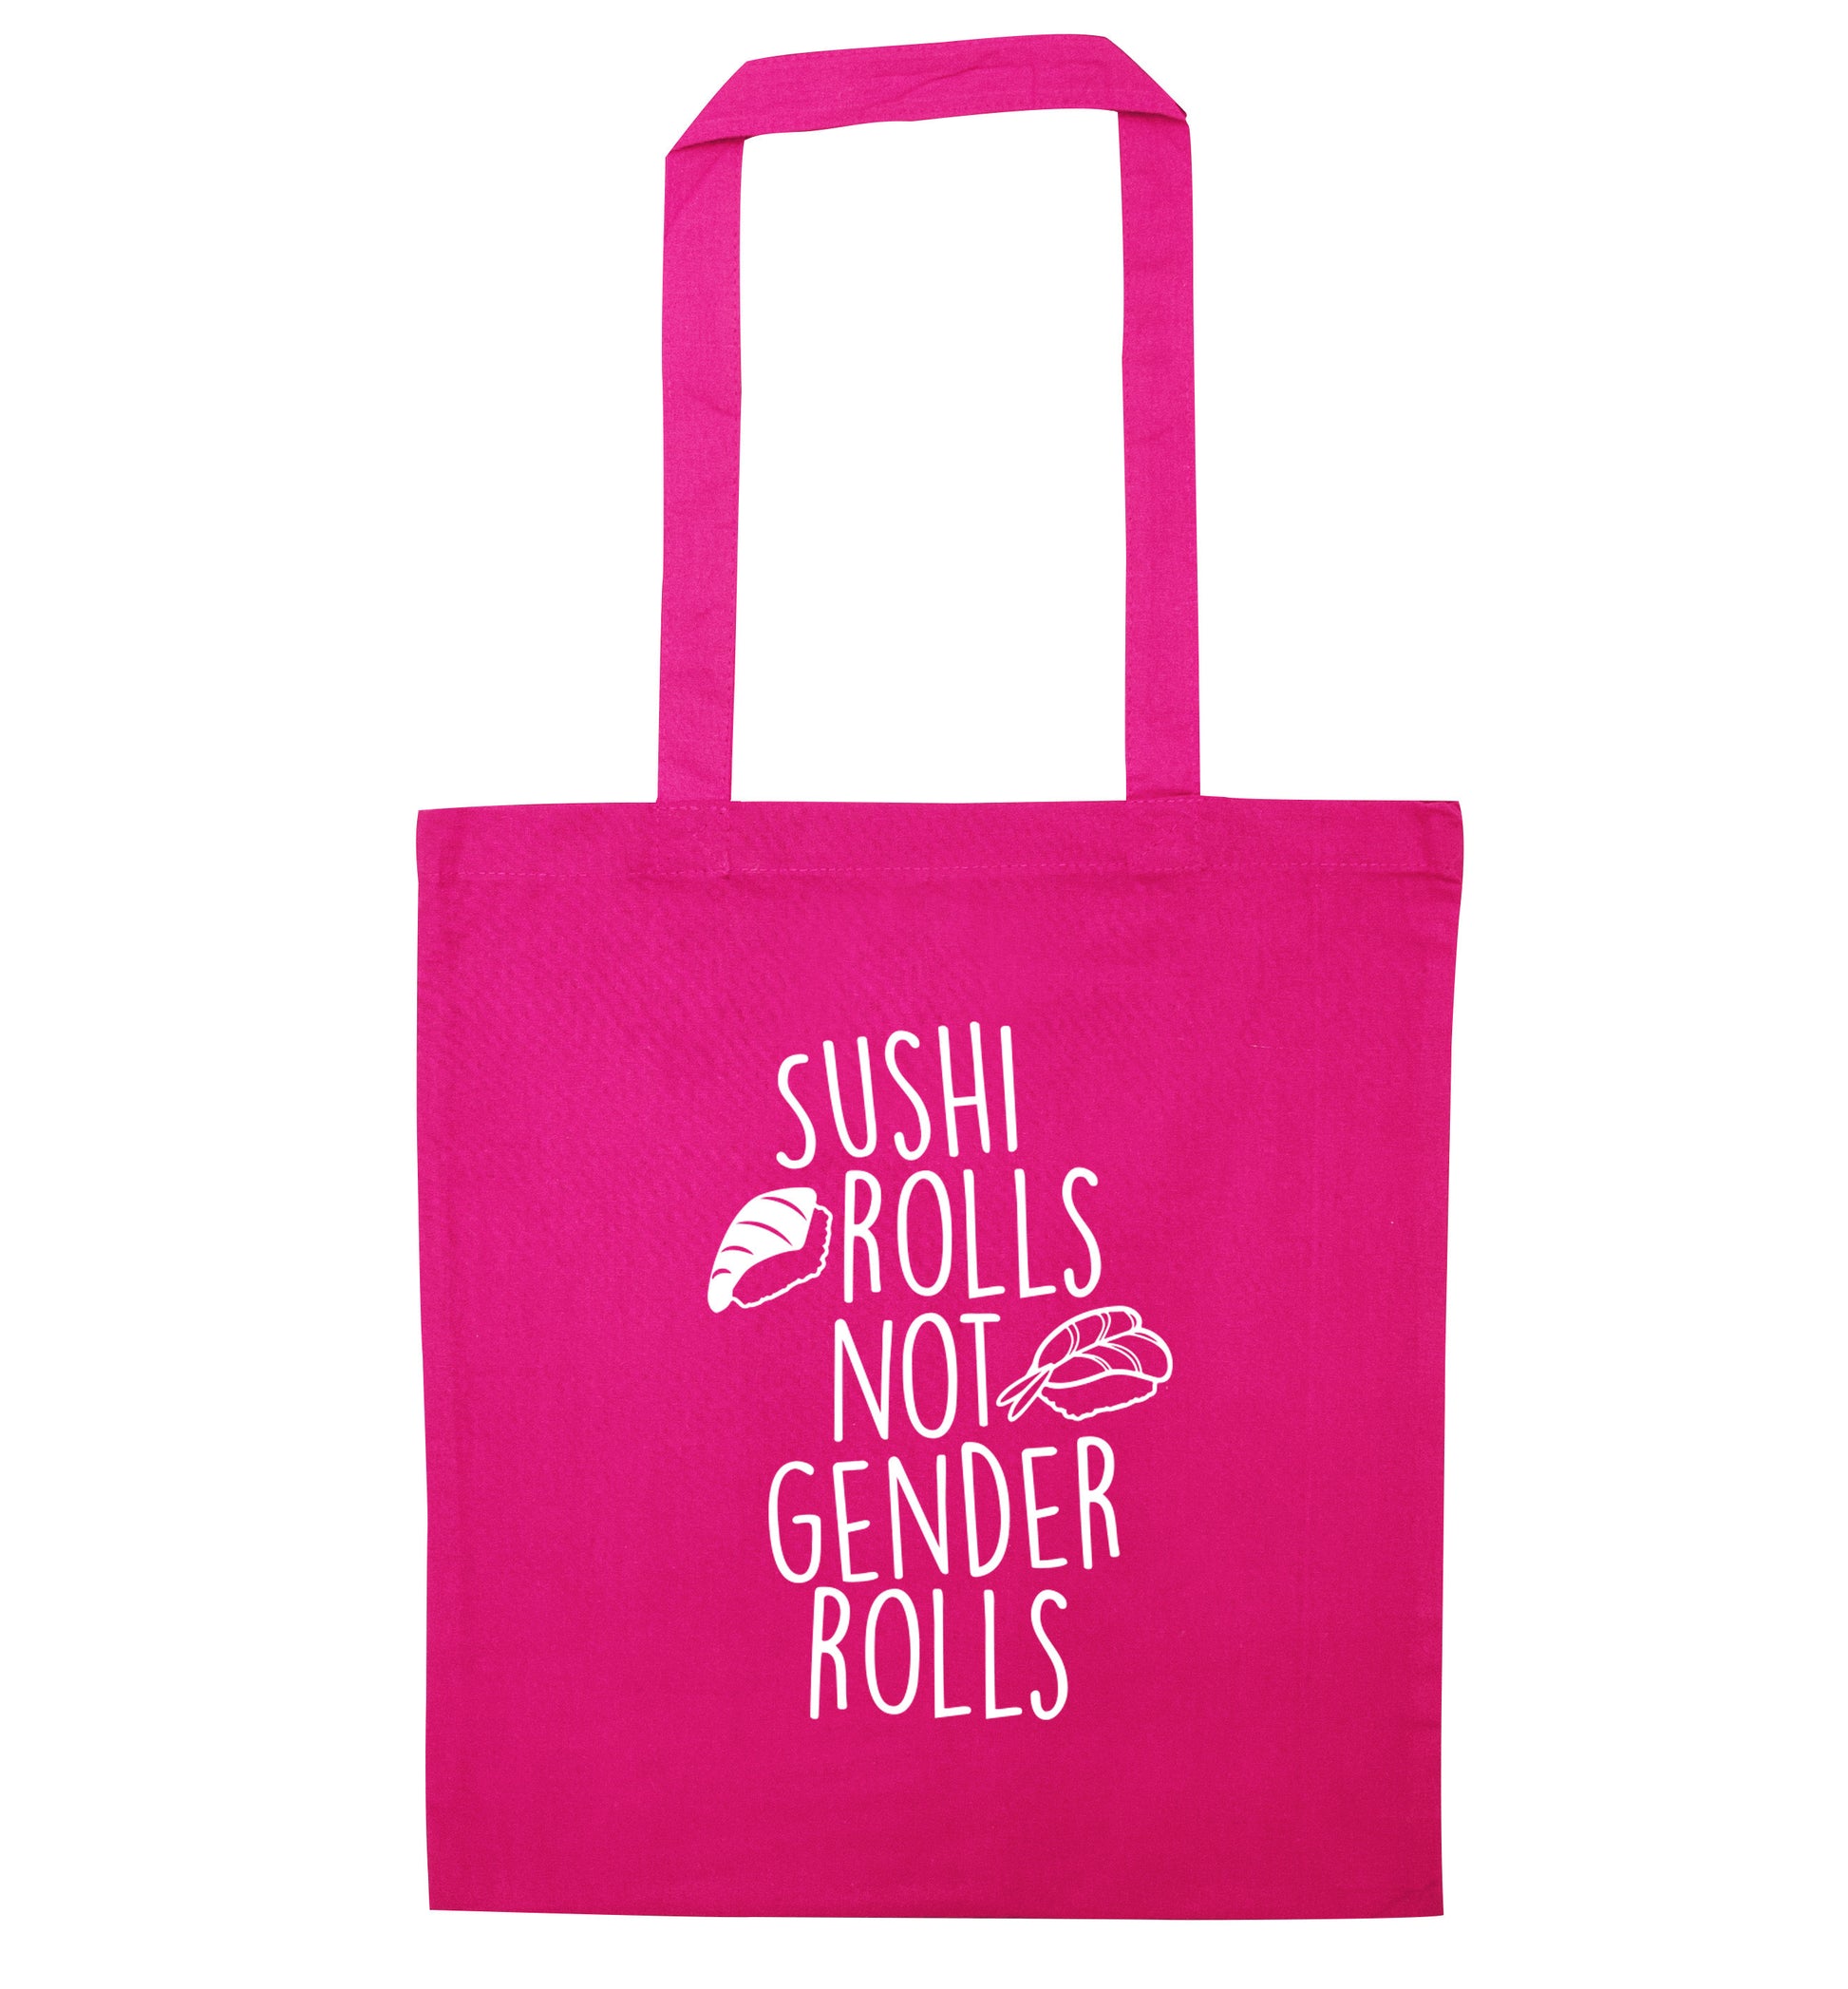 Sushi rolls not gender rolls pink tote bag